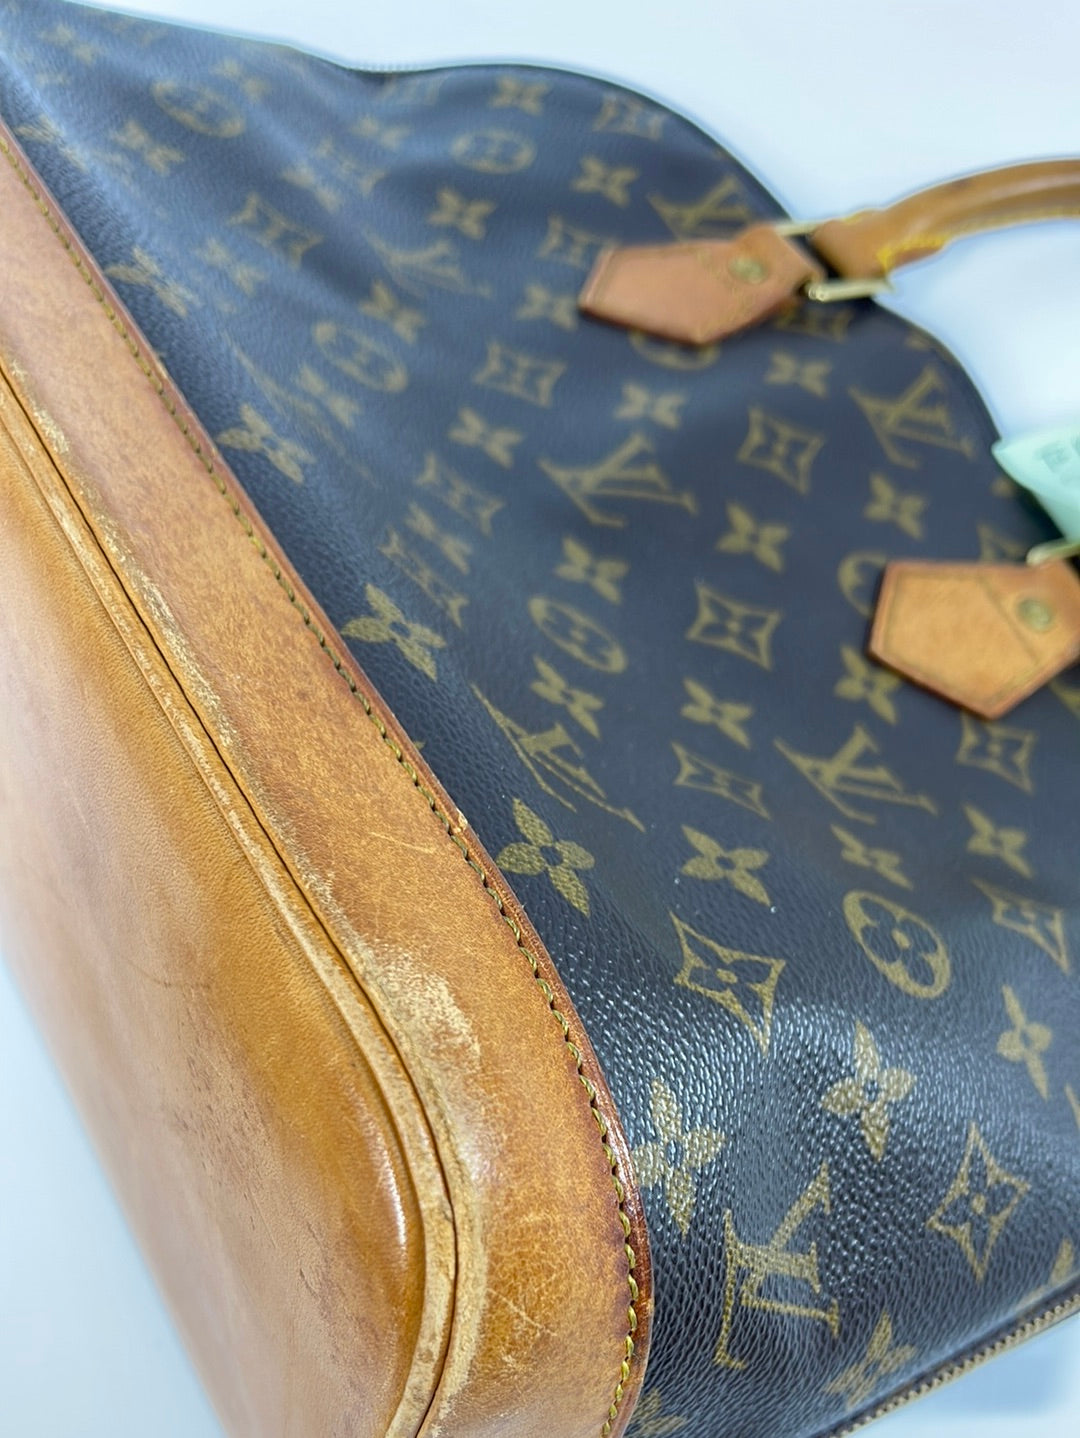 Louis Vuitton Alma Handbag 331537